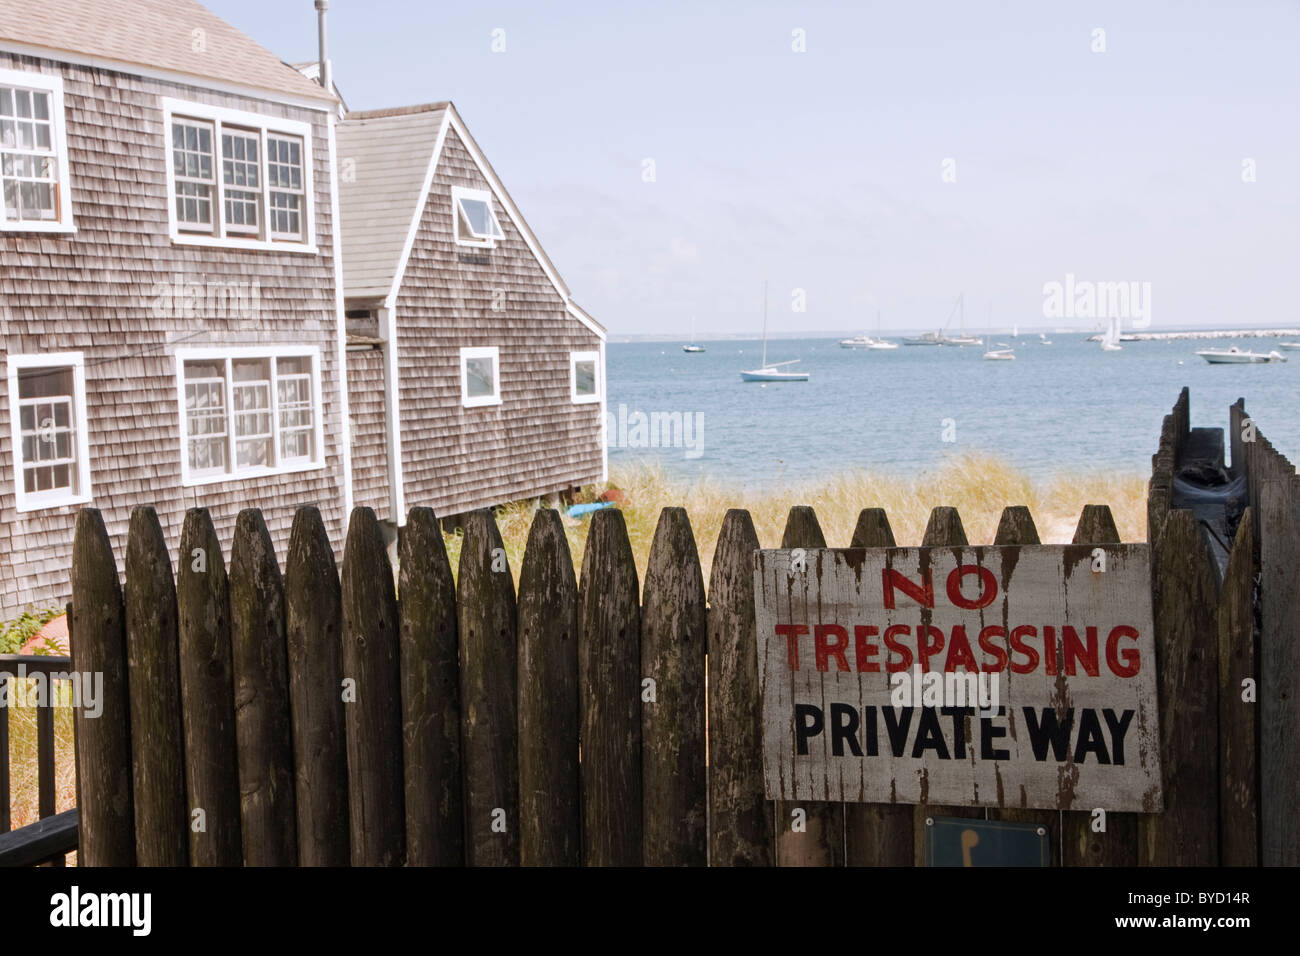 No hay signo de allanamiento en frente de una casa frente a la playa, en Cape Cod, Massachusetts. Foto de stock